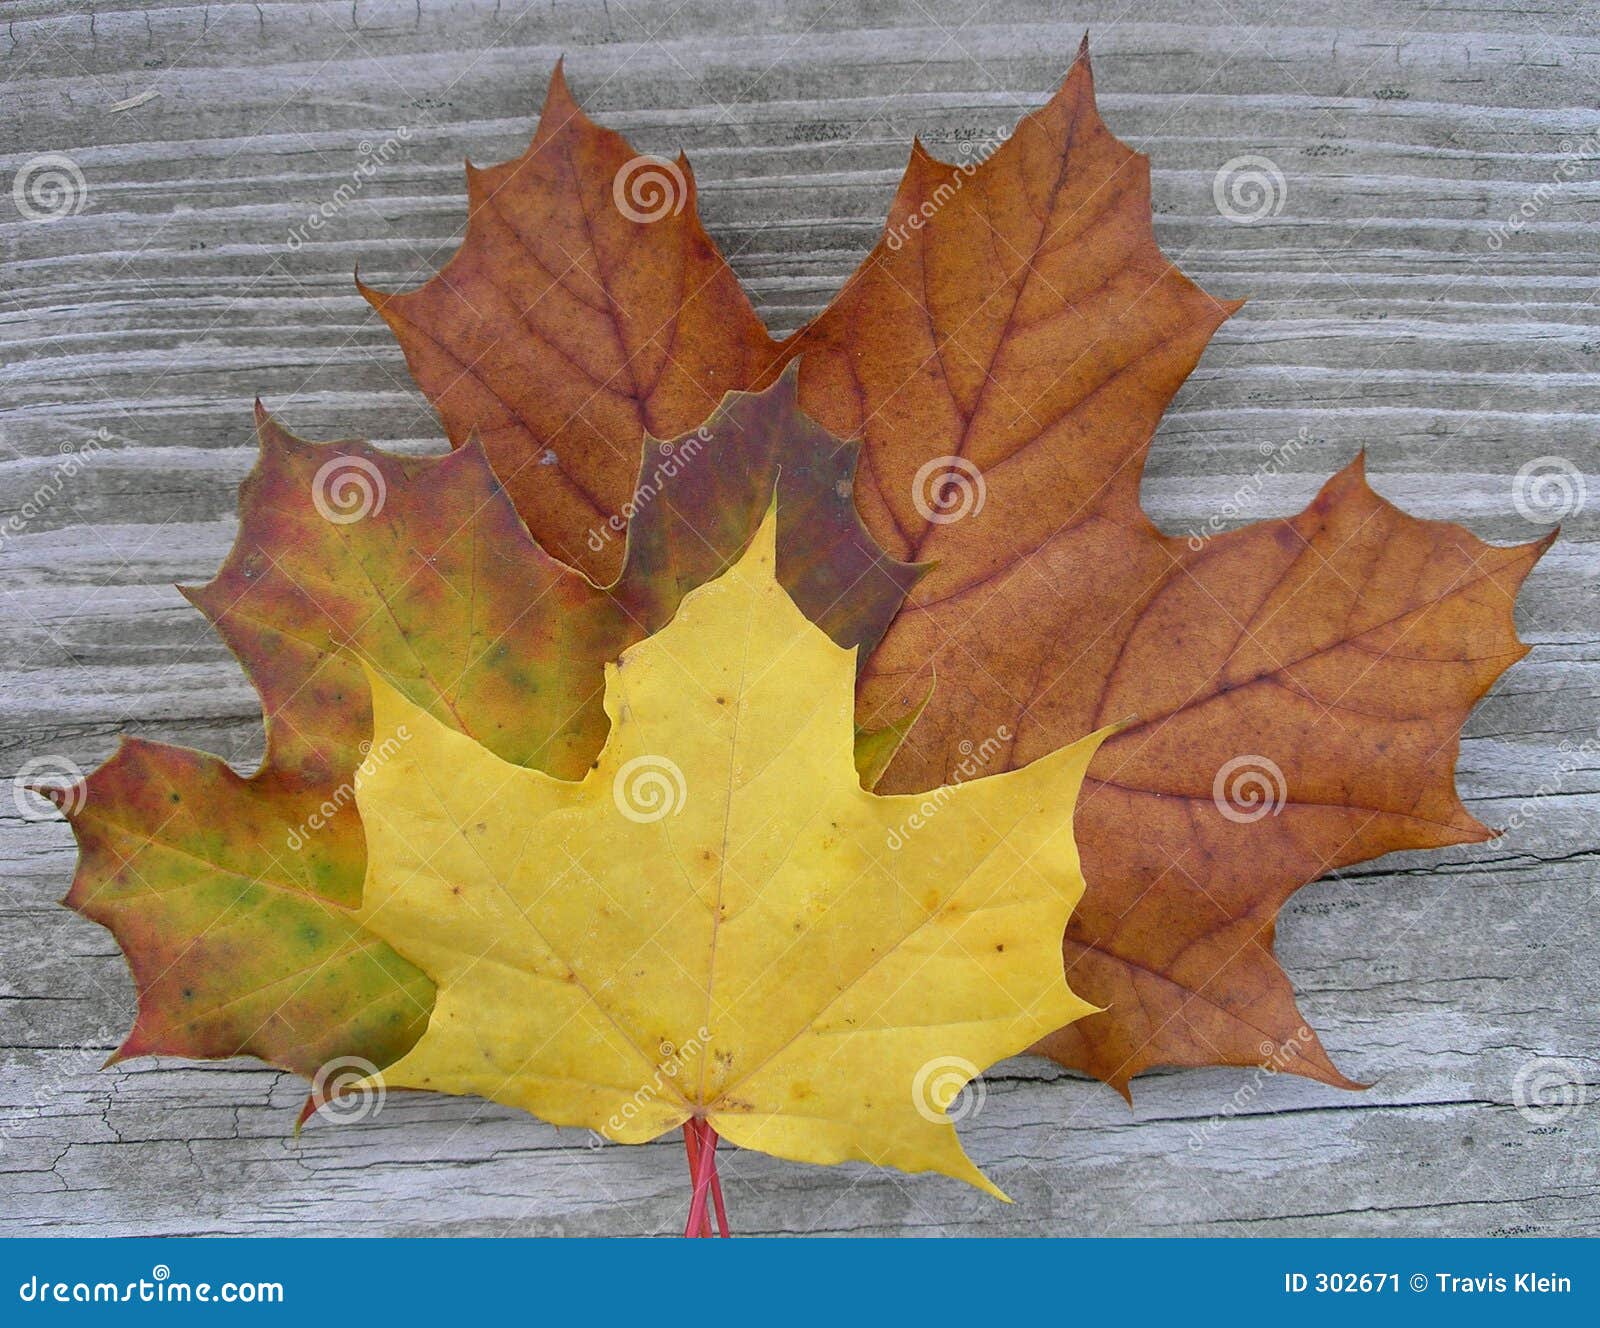 Maple-leaves2. Un primo piano di tre foglie di acero